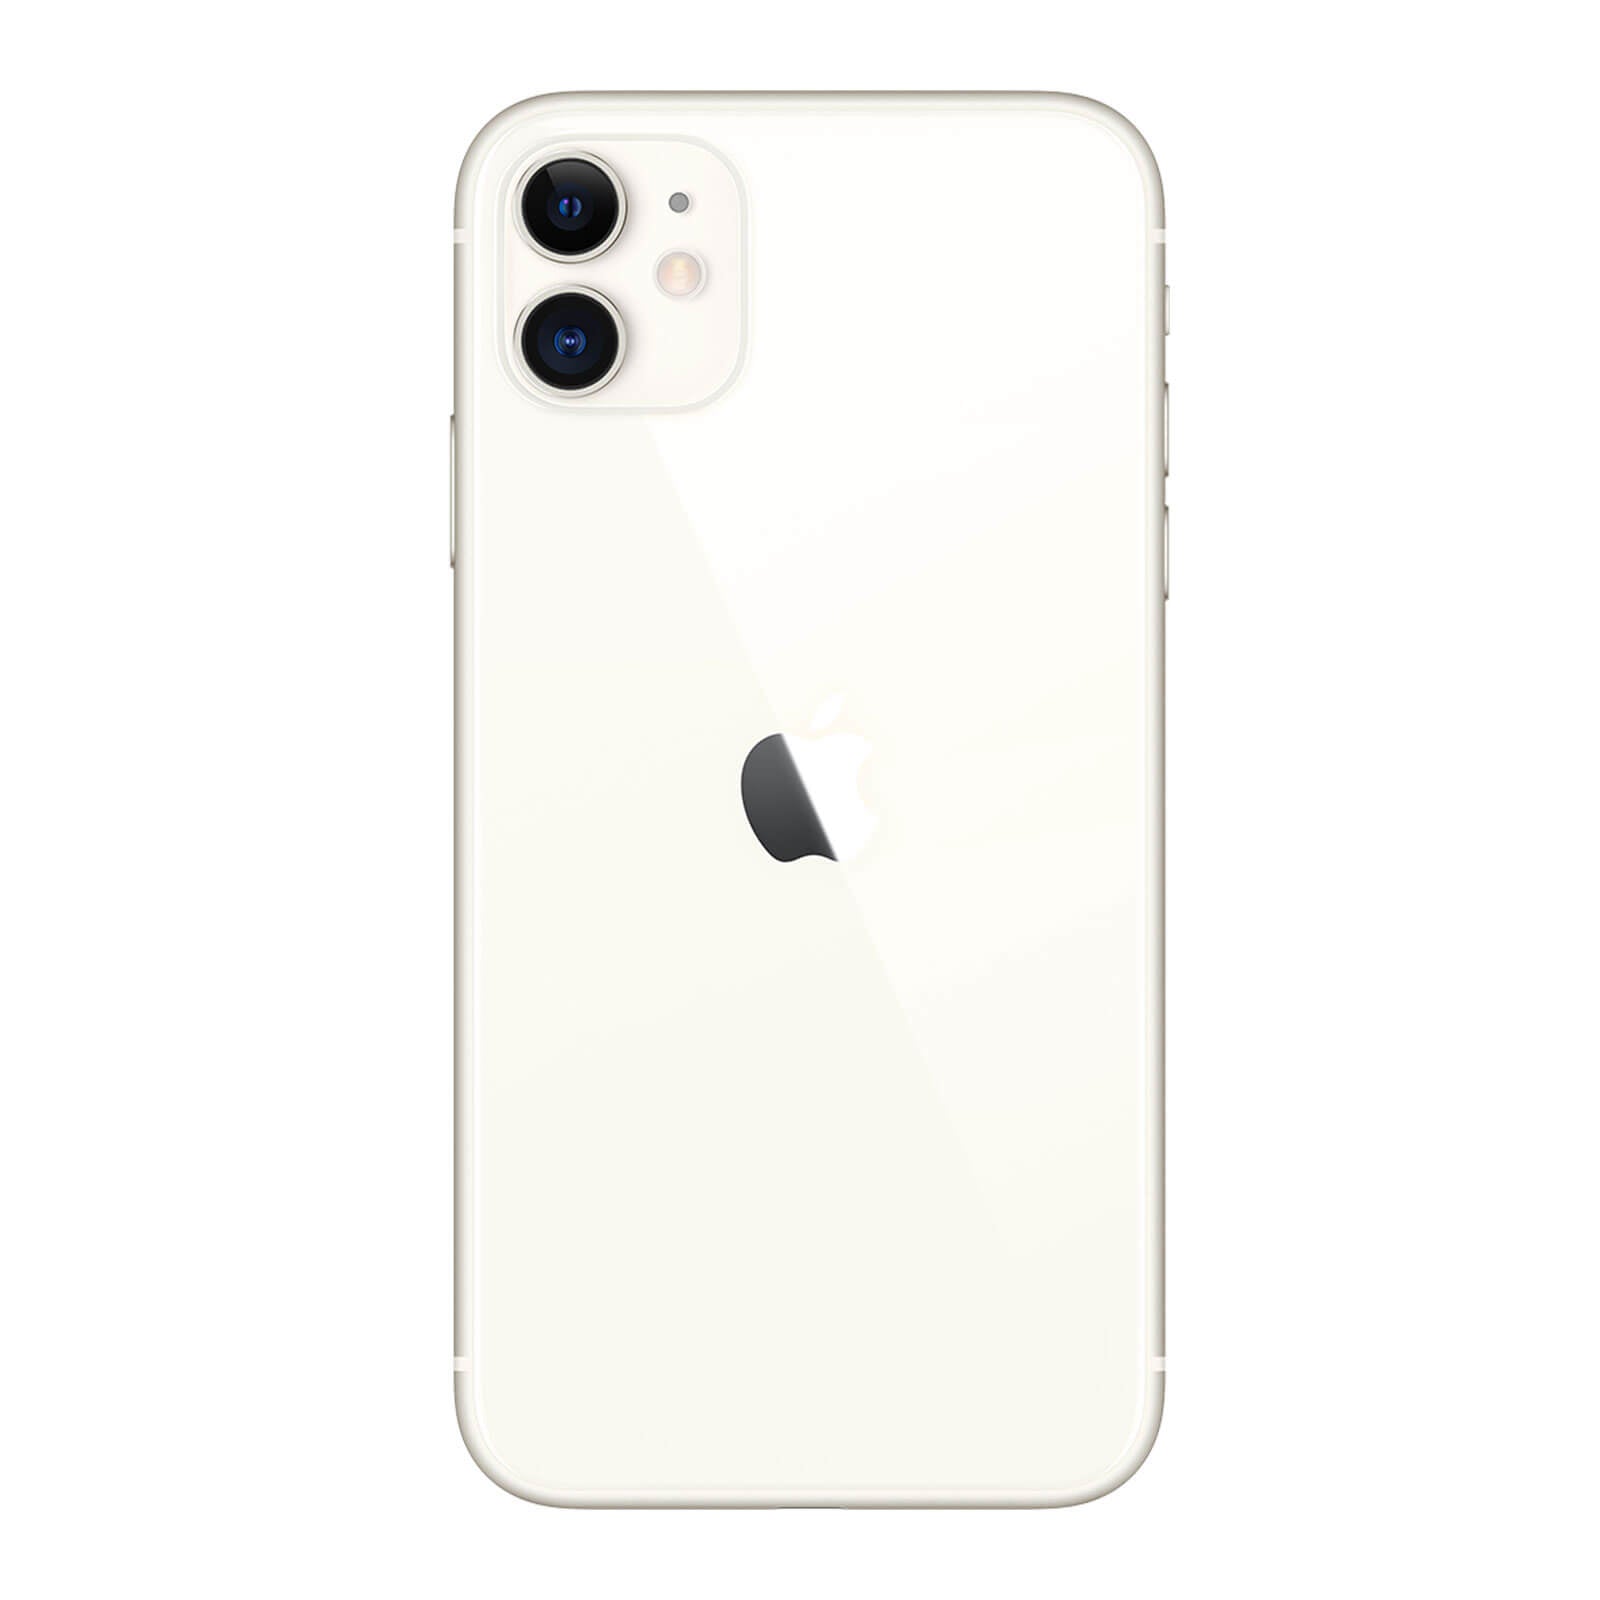 Apple iPhone 11 128GB White Pristine - T-Mobile